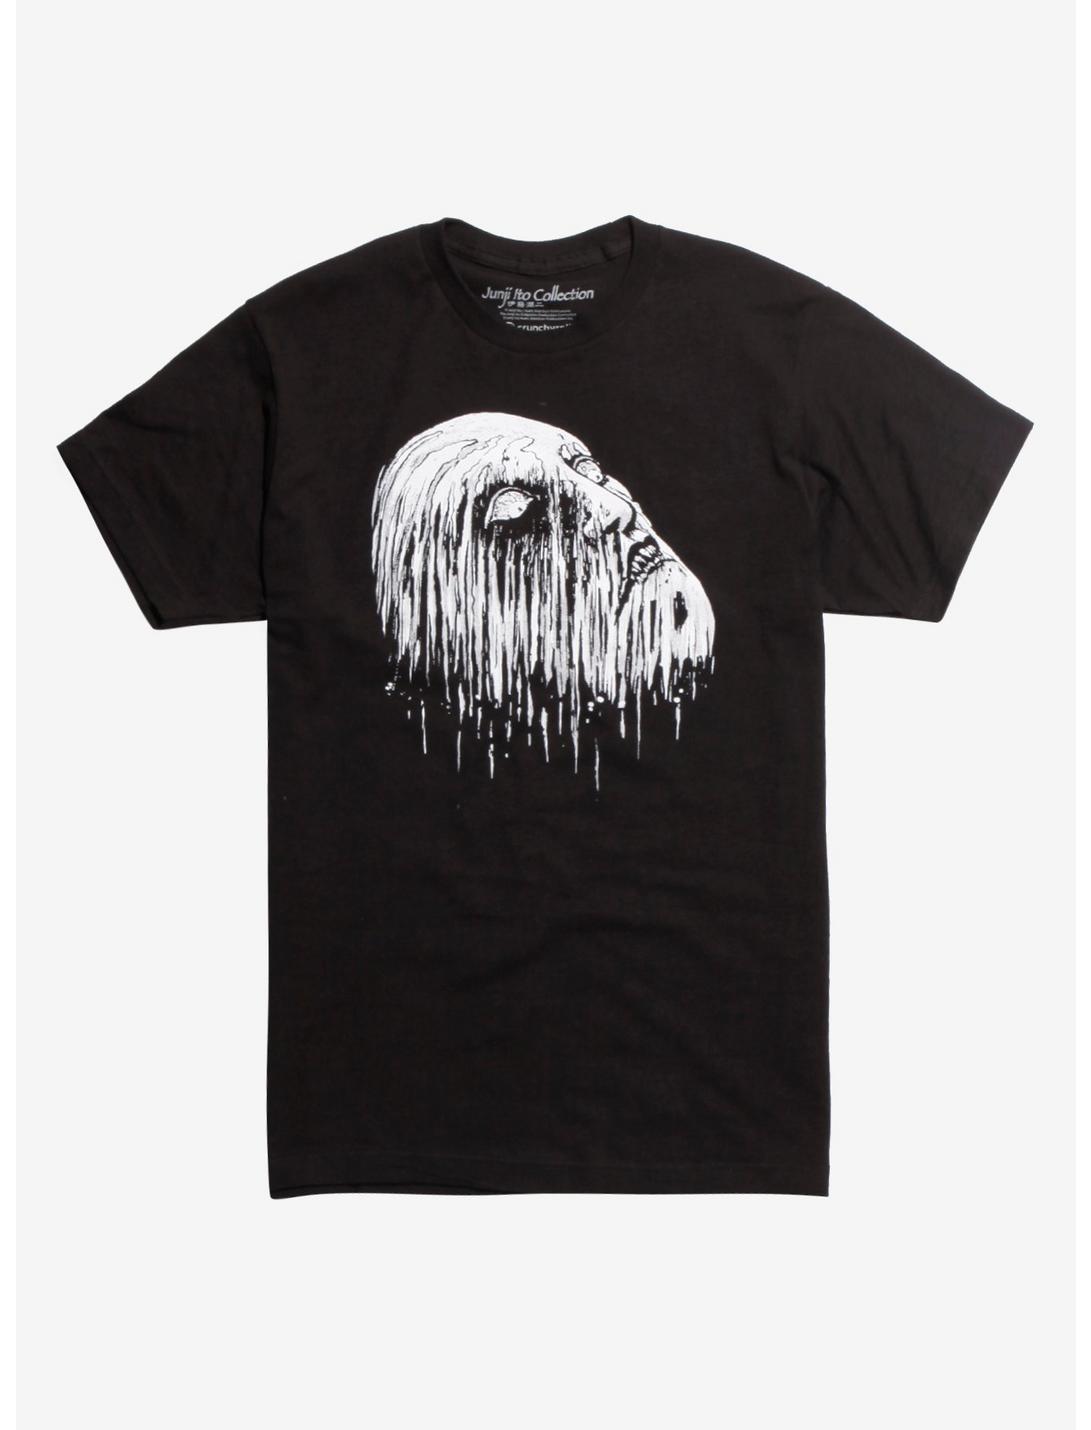 Junji Ito Collection Melting Face T-Shirt, BLACK, hi-res